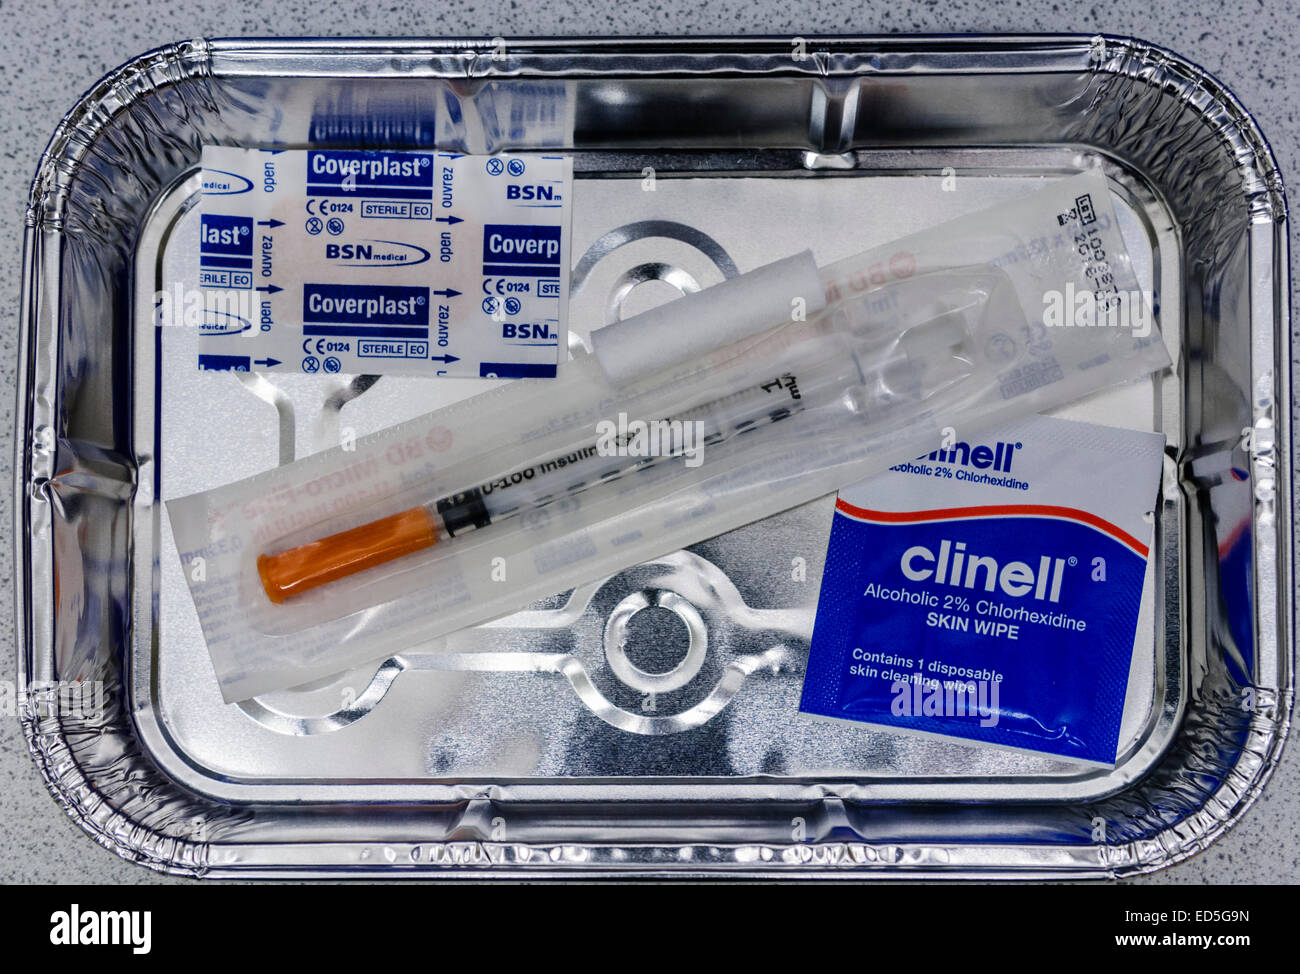 Vassoio di alluminio riempito con una siringa per insulina e altre apparecchiature pronto per la somministrazione di insulina a un paziente. Foto Stock